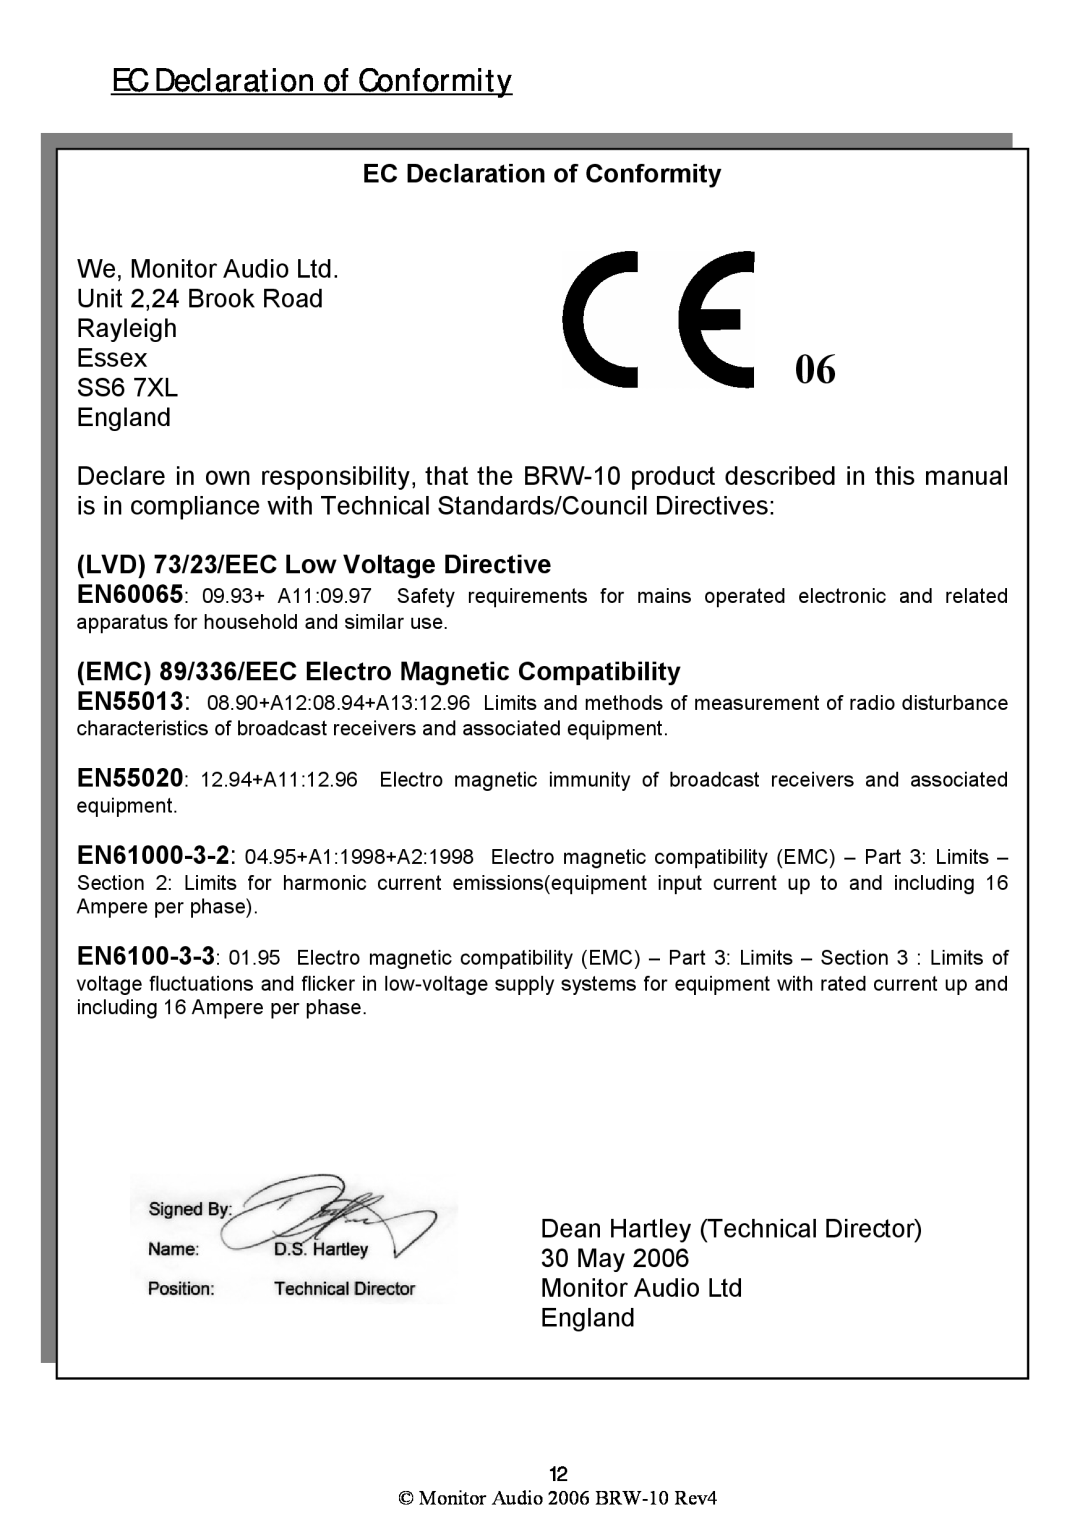 Monitor Audio BRW-10 warranty EC Declaration of Conformity, LVD 73/23/EEC Low Voltage Directive 